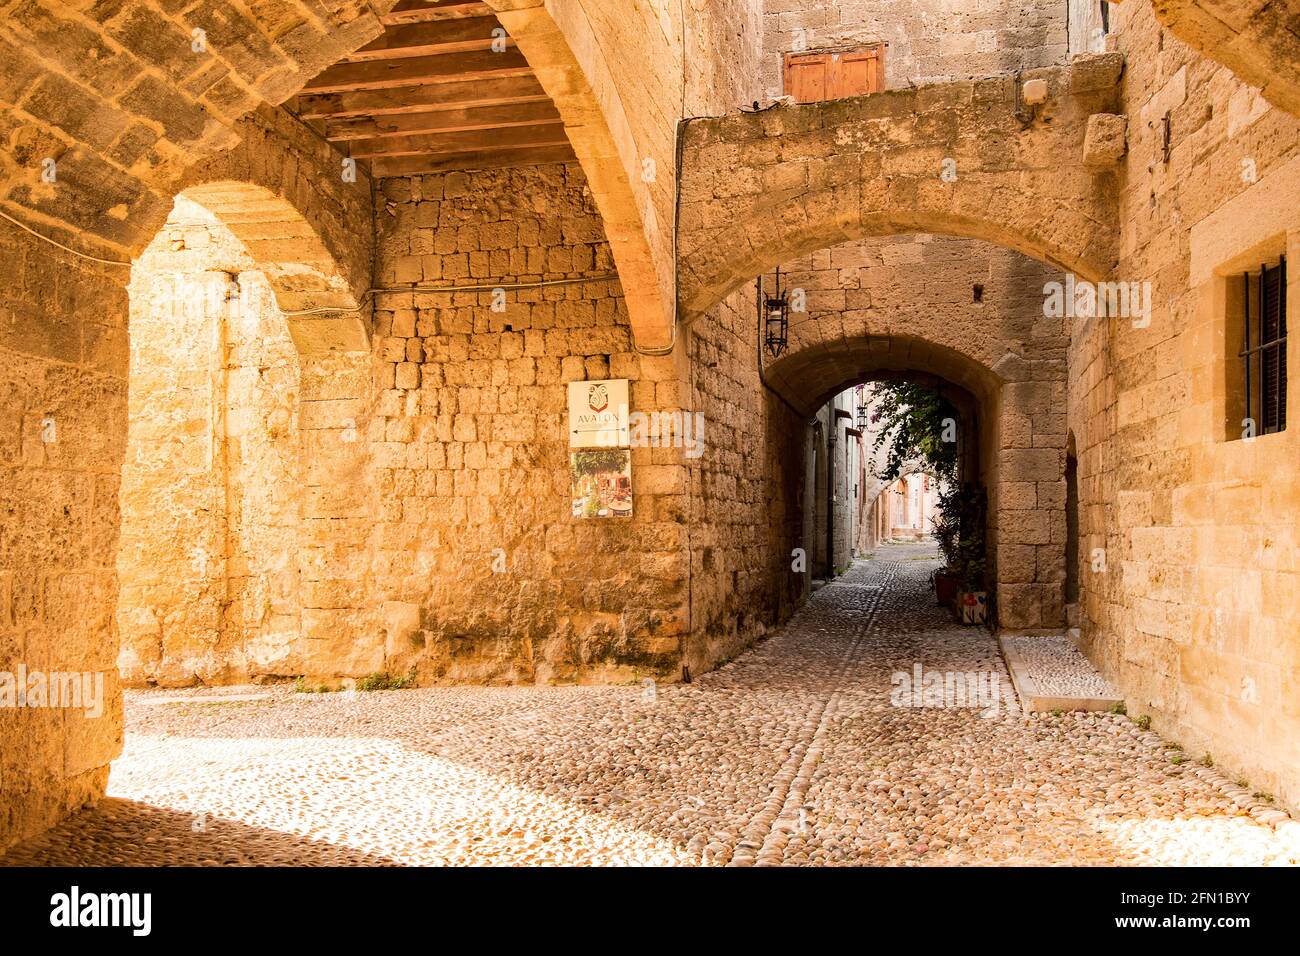 Strada medievale ad arco nella città vecchia di Rodi Foto Stock